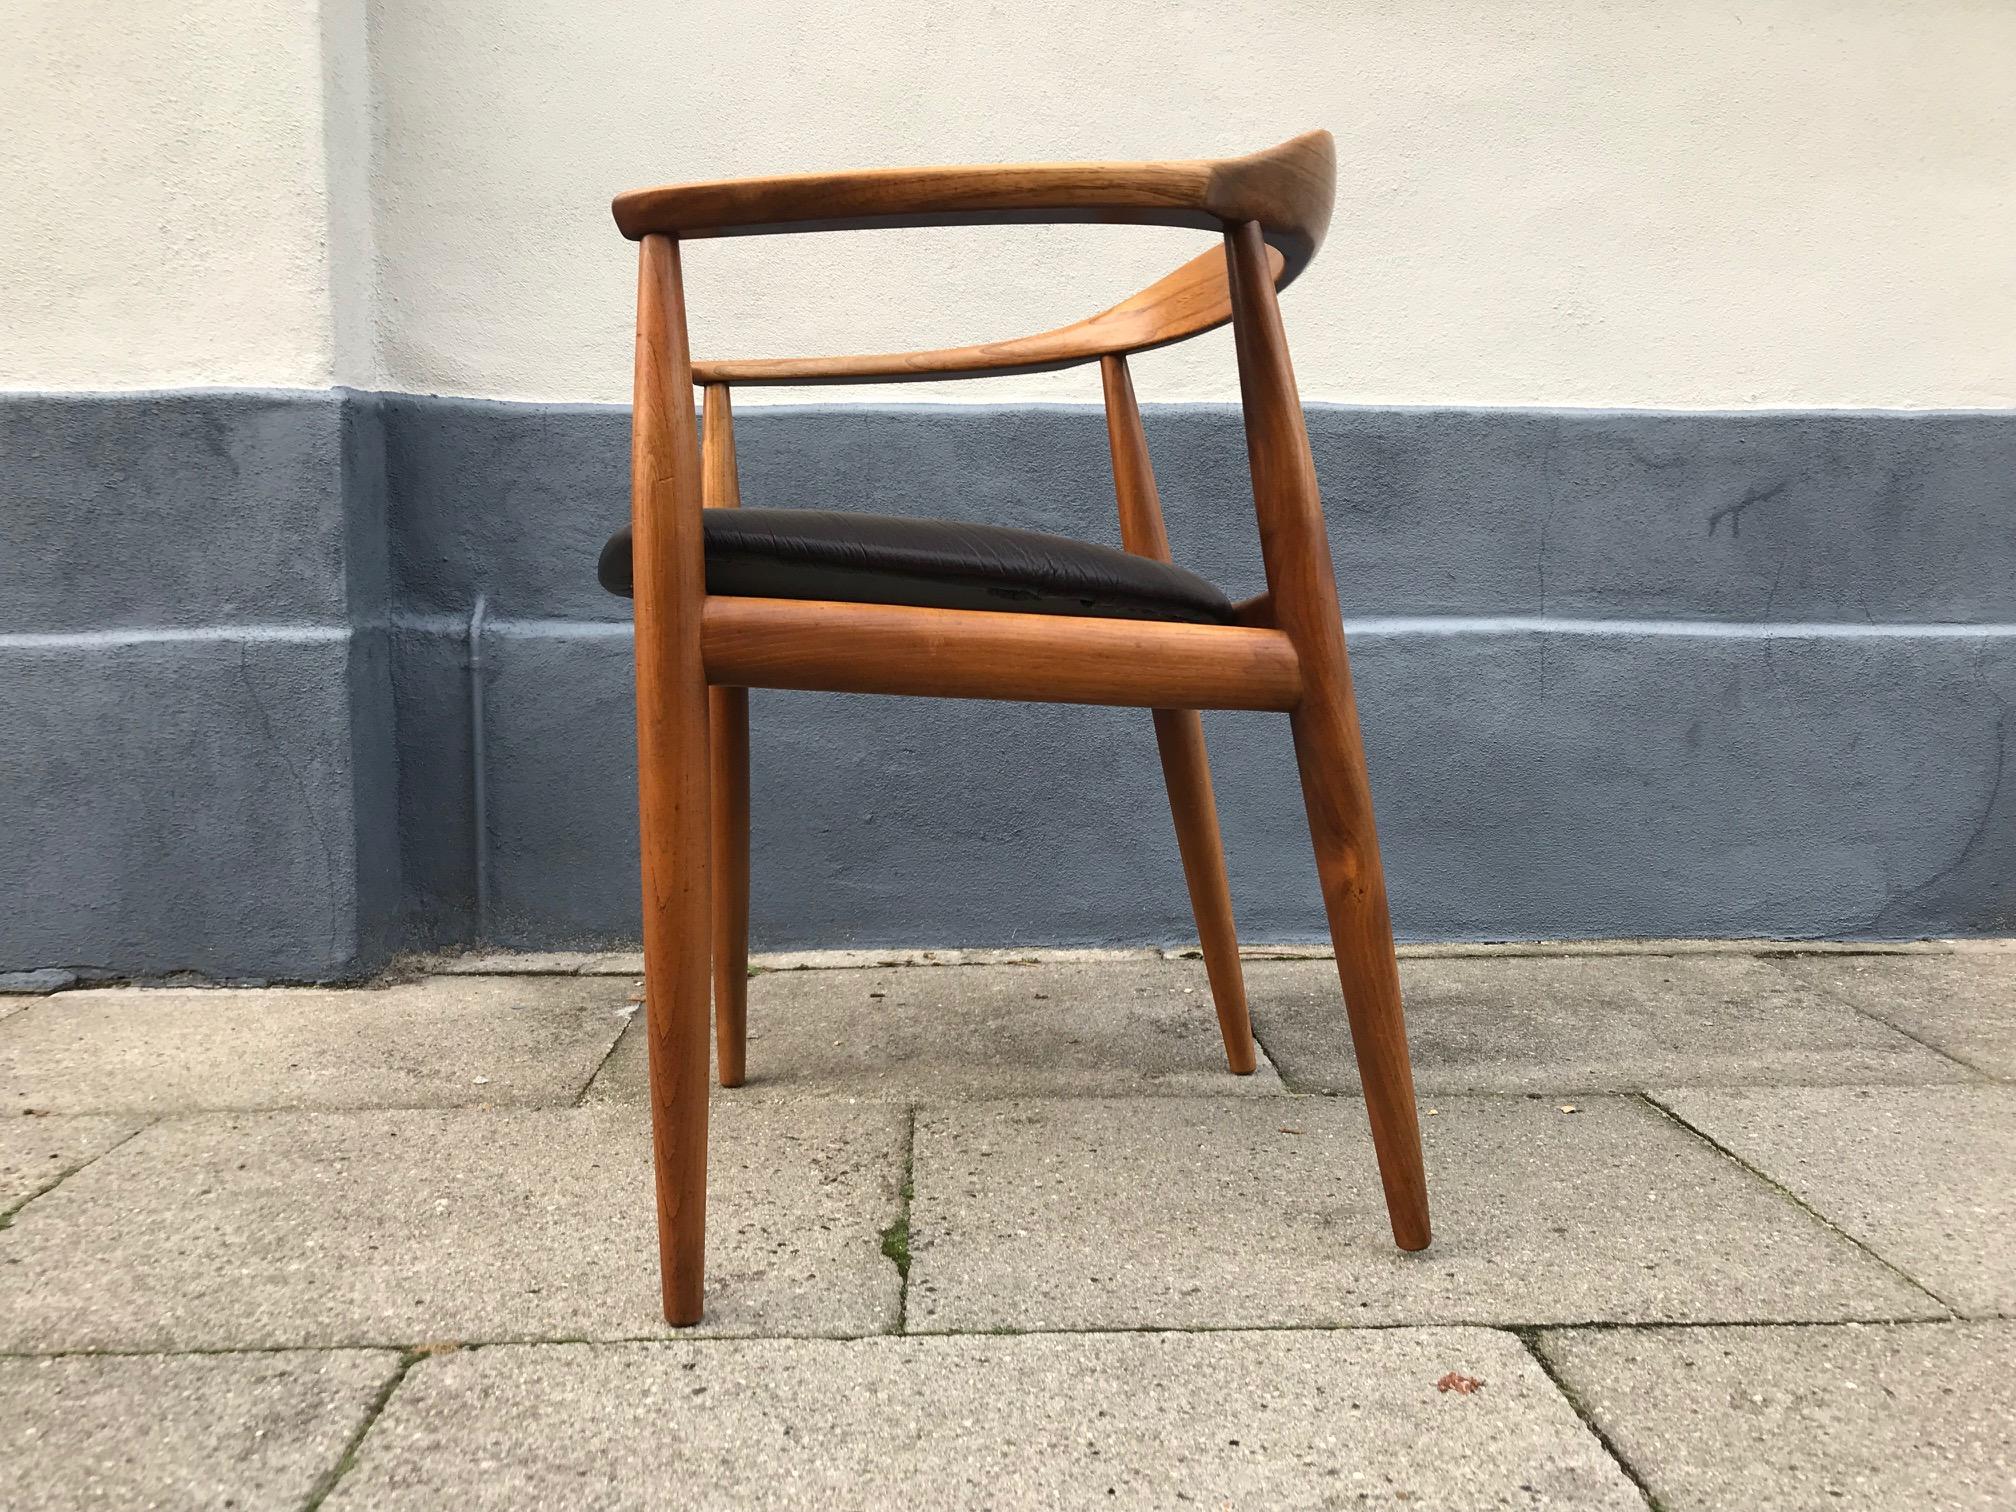 Ein skulpturaler dänischer Sessel aus Ulme, entworfen von Illum Wikkelsø für den Tischler Niels Eilersen. Es wurde in den 1950er Jahren in Dänemark hergestellt. Er wurde mit dunkelbraunem Leder neu gepolstert.